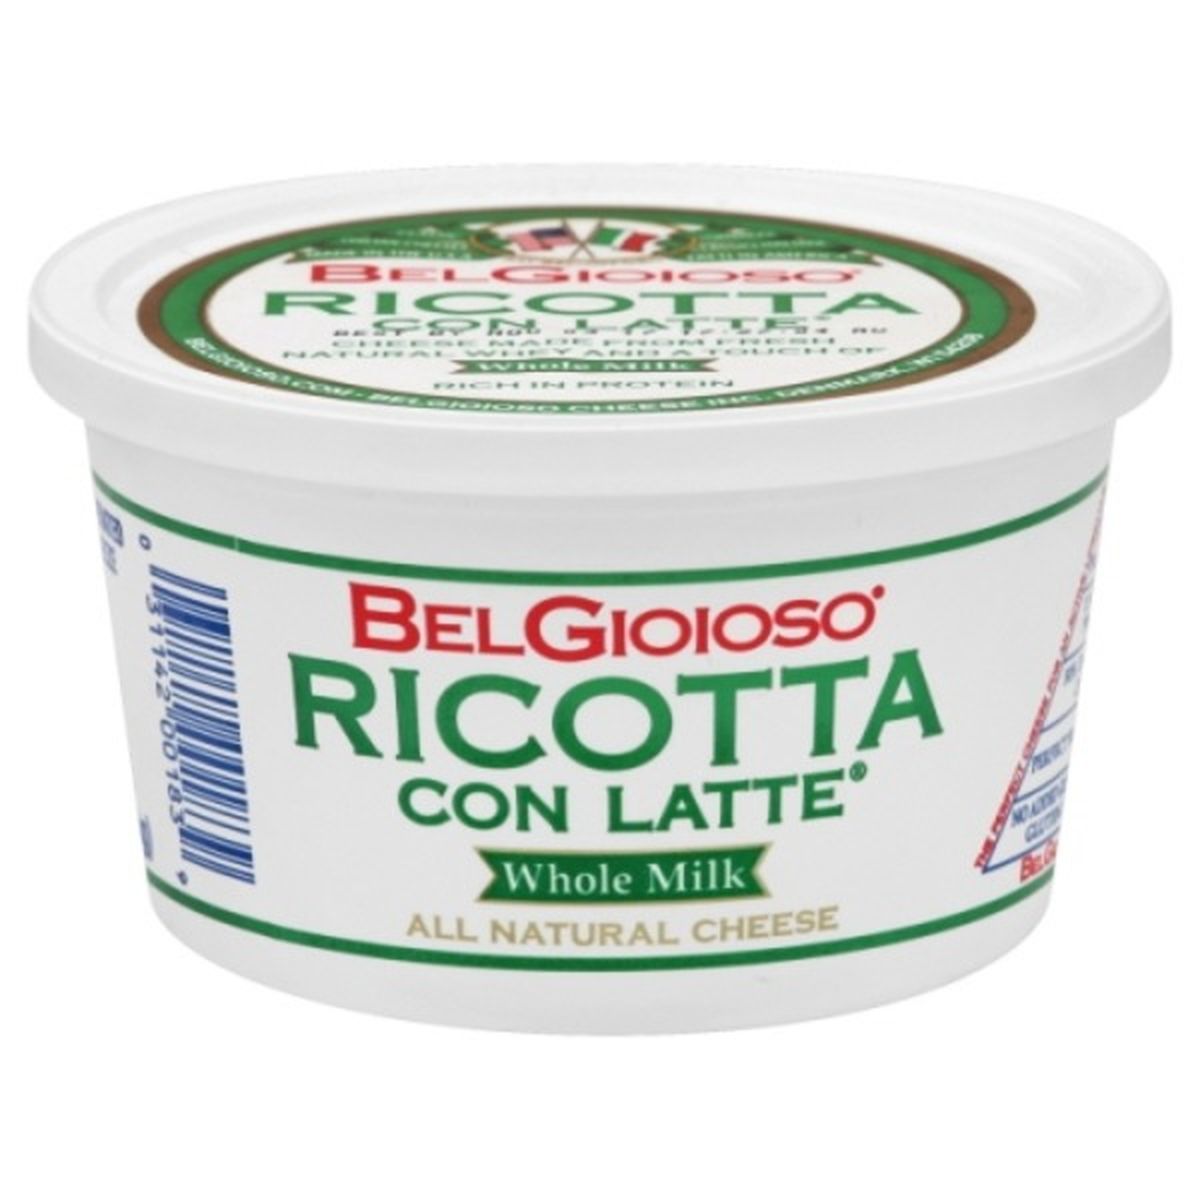 Calories in BelGioioso Ricotta con Latte, Whole Milk